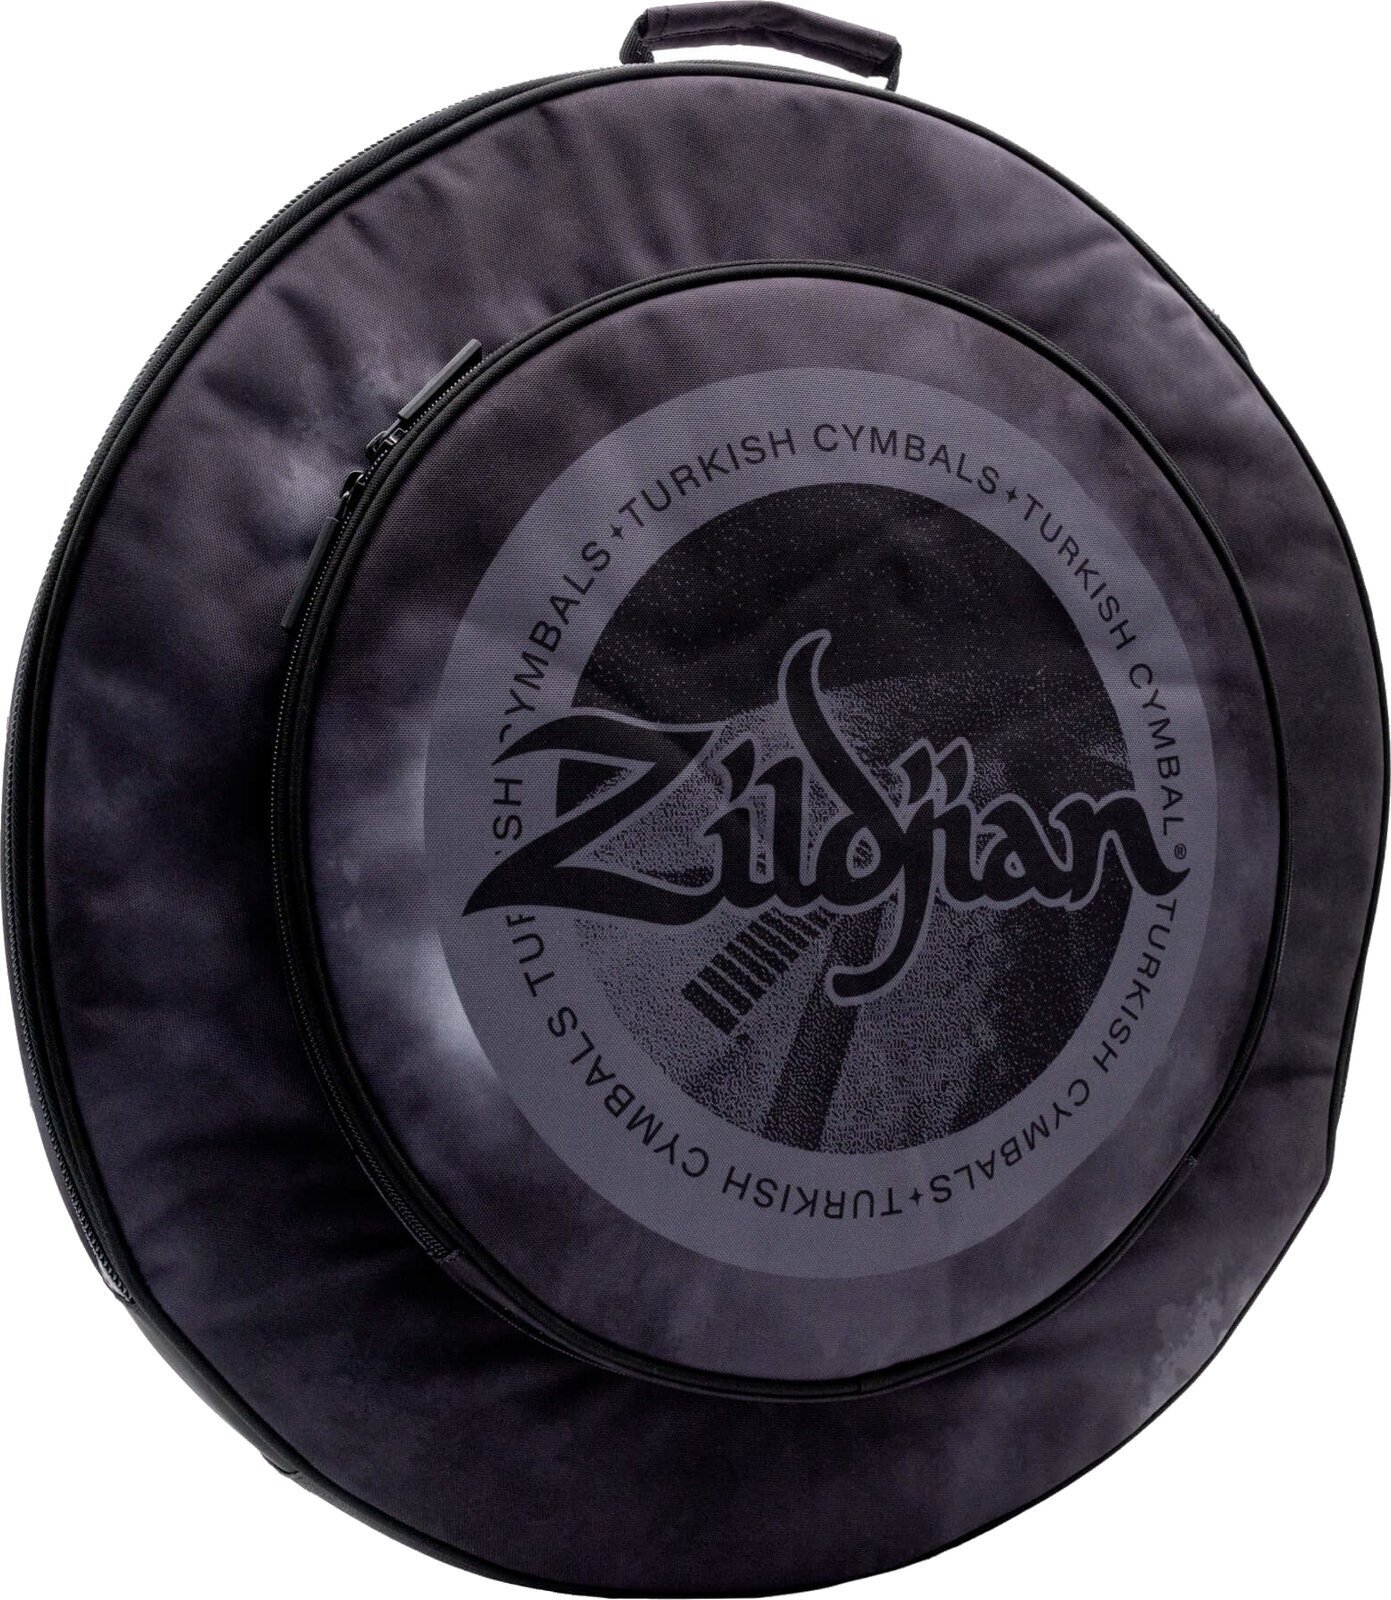 Beckentasche Zildjian 20" Student Cymbal Bag Black Rain Cloud Beckentasche